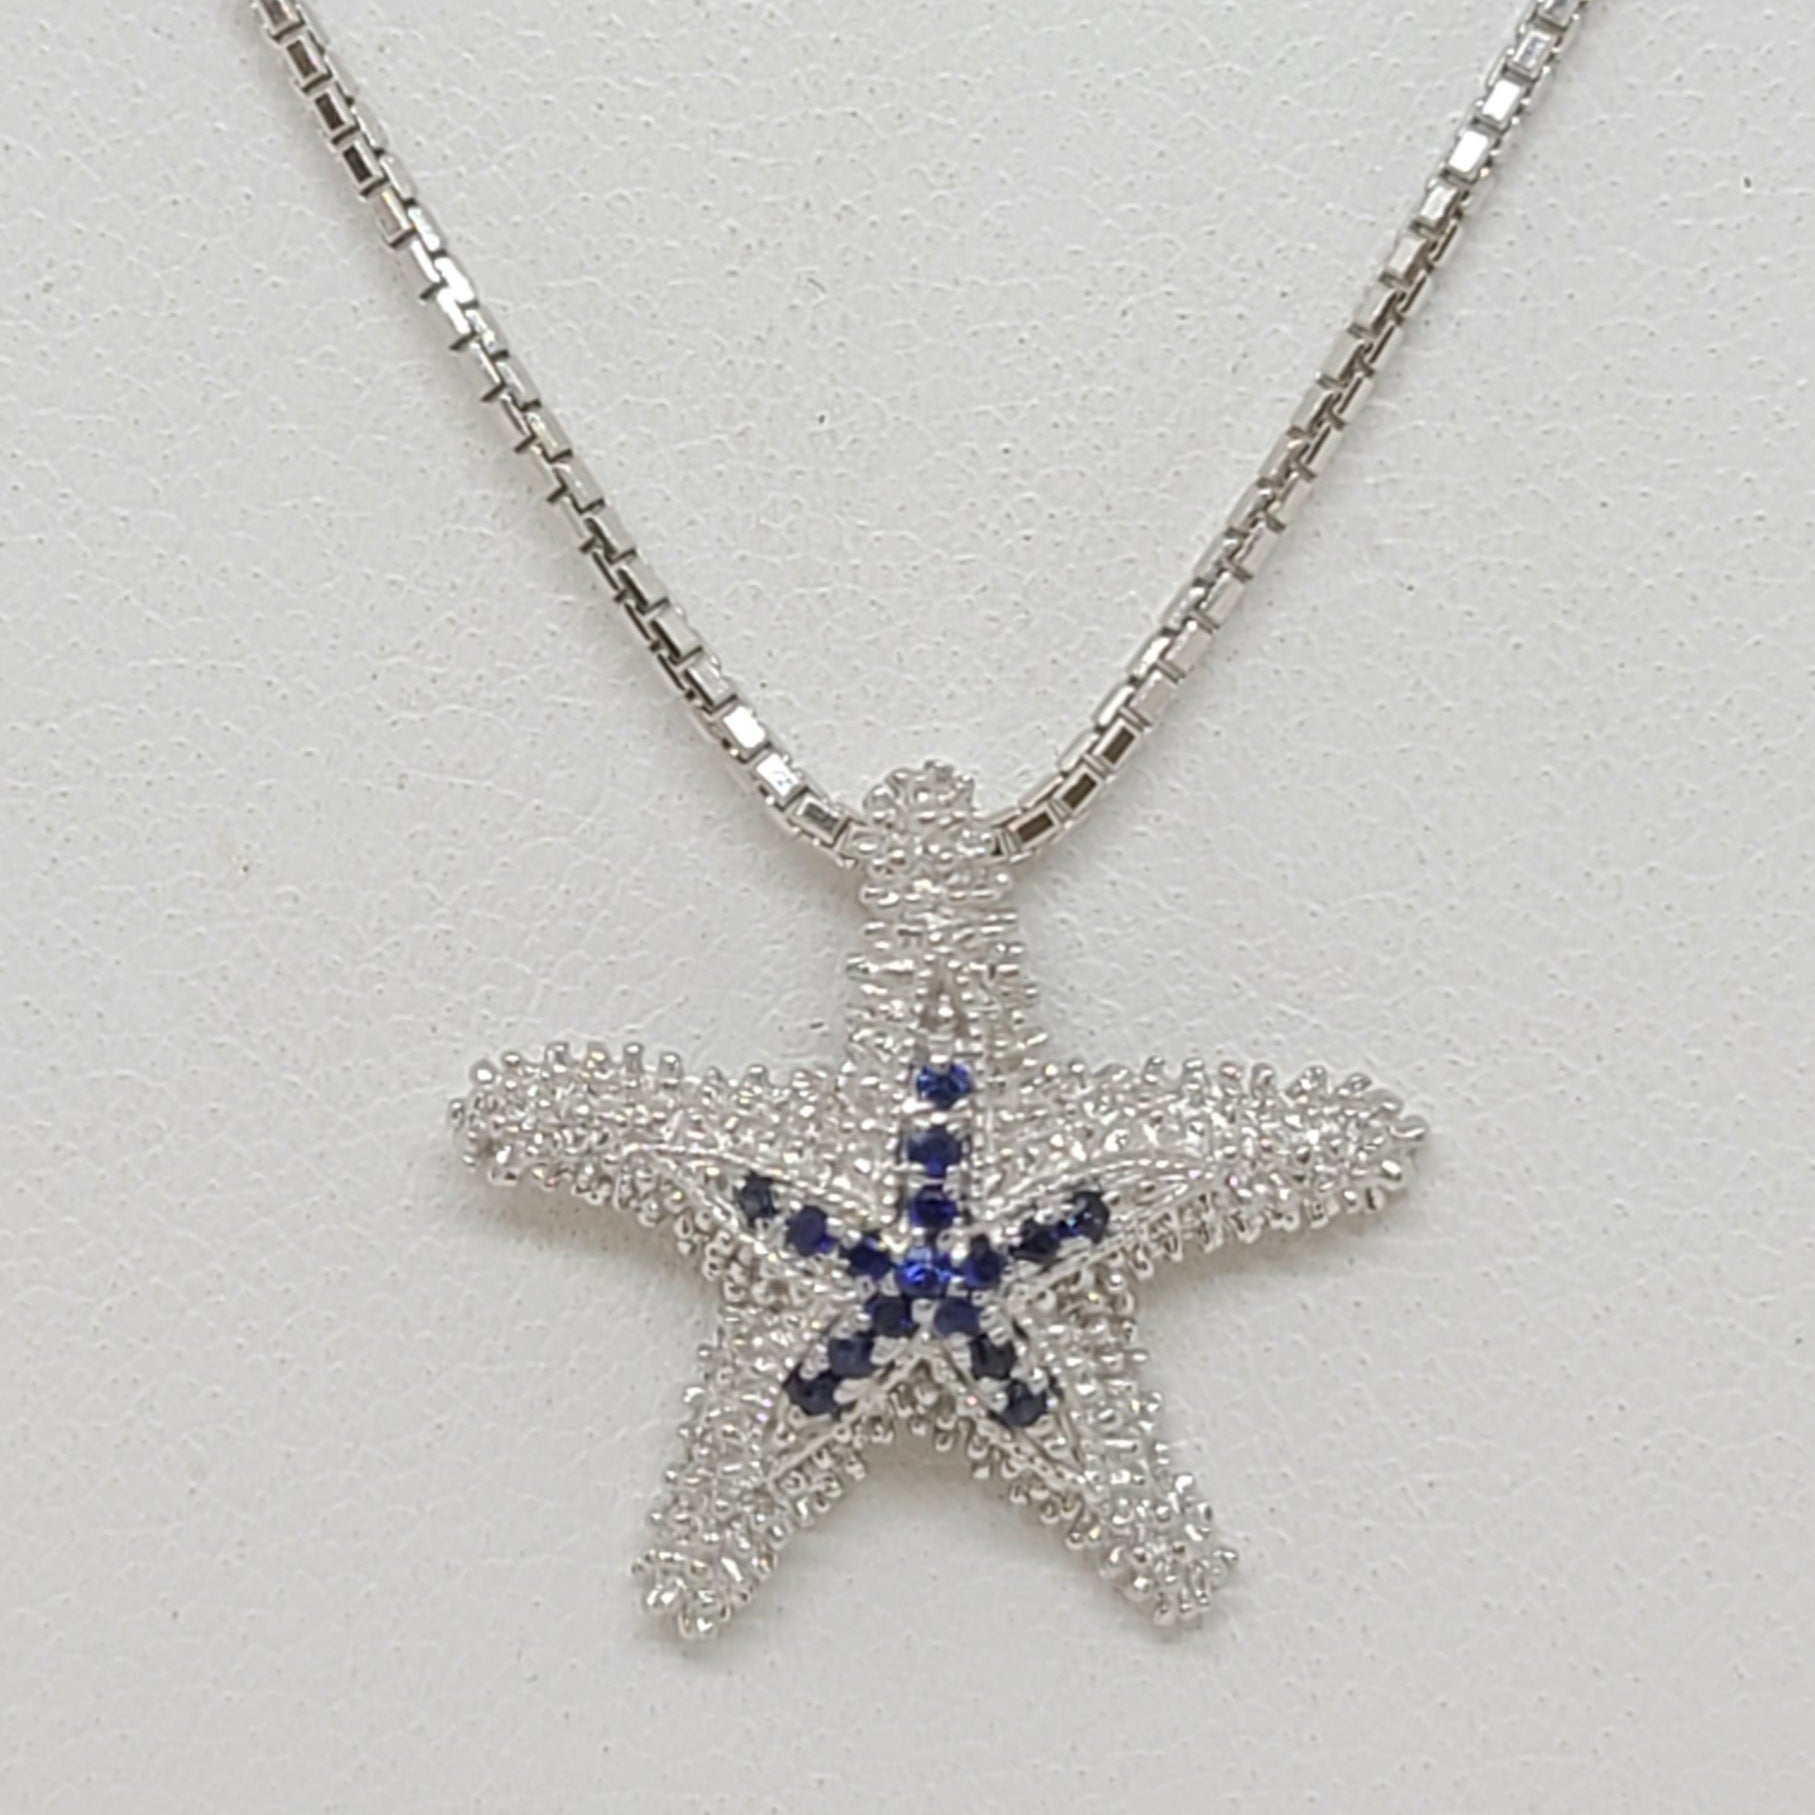 Silver Sea Star Pendant